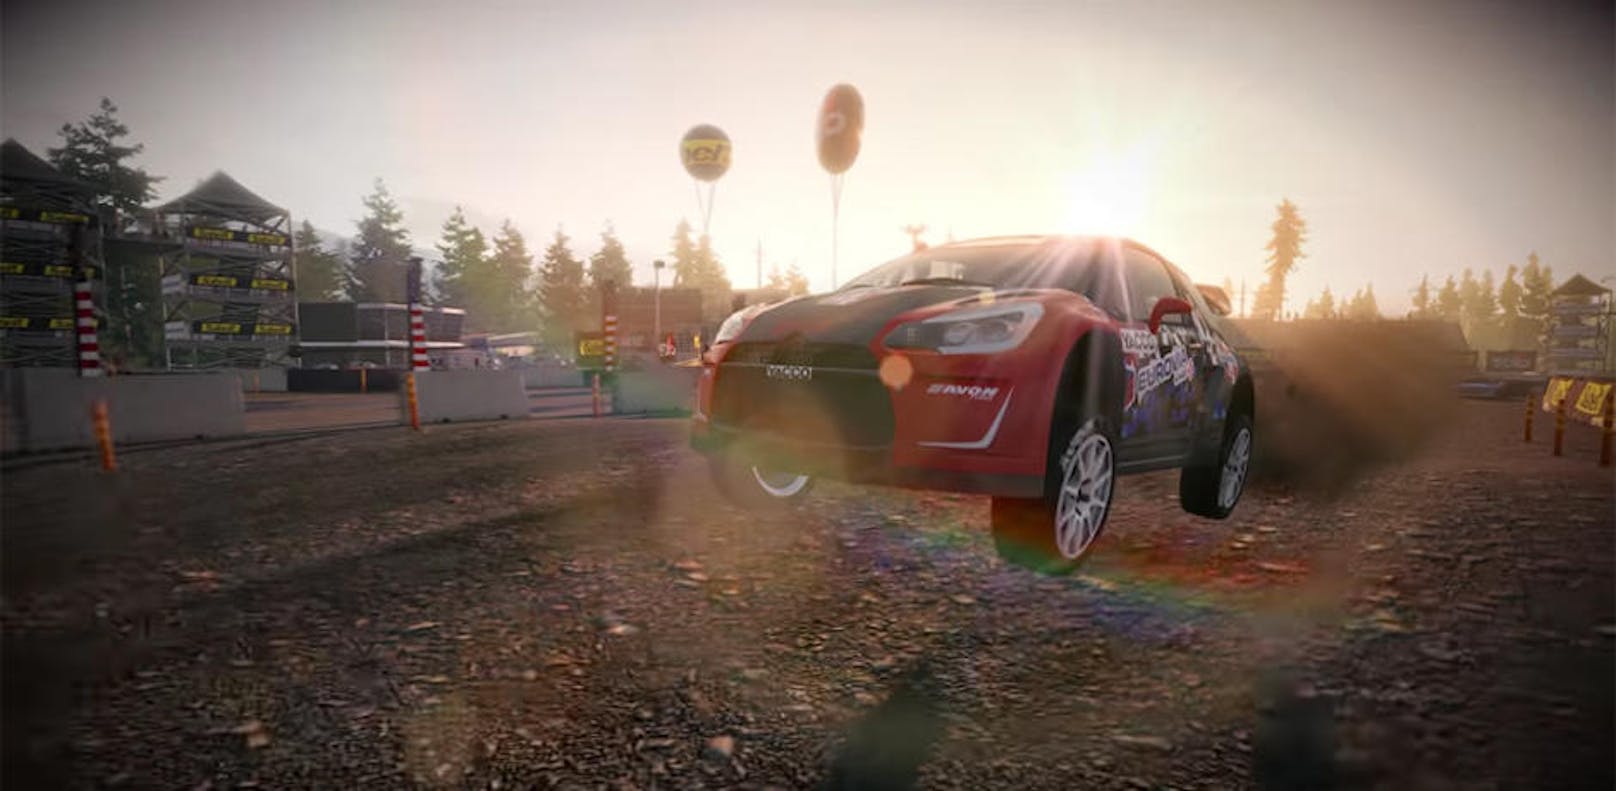 Bigben und Kylotonn Racing Games verkünden, dass der neueste DLC zu V-Rally 4 für Xbox One, PlayStation 4 und PC verfügbar ist. Dieser DLC beinhaltet den Citroen DS3 RX, einen ebenso kraftvollen wie agilen Rennwagen. Er kommt in einer speziell für V-Rally 4 designten Lackierung daher und wird diese Saison von Damien Meunier gefahren, dem jüngsten Fahrer, der jemals in Frankreichs Rallycross Championship 2018 angetreten ist. Dieser DLC ist für 4,99 Euro für PlayStation 4, PC und Xbox One erhältlich. Zu einem späteren Zeitpunkt wird er auch für die Nintendo Switch verfügbar sein. <a href="https://www.youtube.com/watch?v=zAKVbftXH70&feature=youtu.be">Zum Trailer.</a>